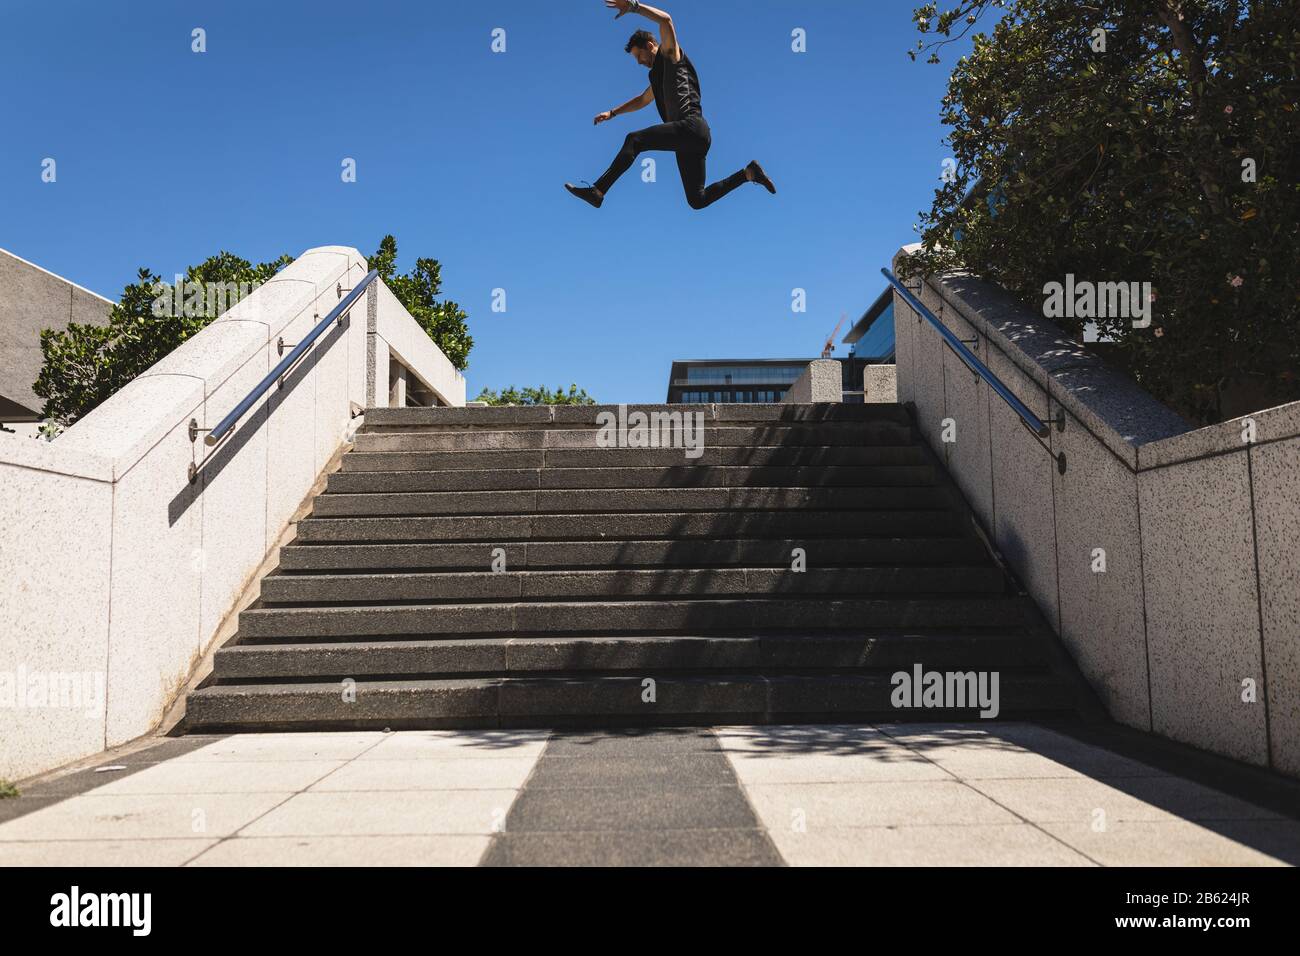 Kaukasischer Mann springt auf eine Treppe Stockfoto